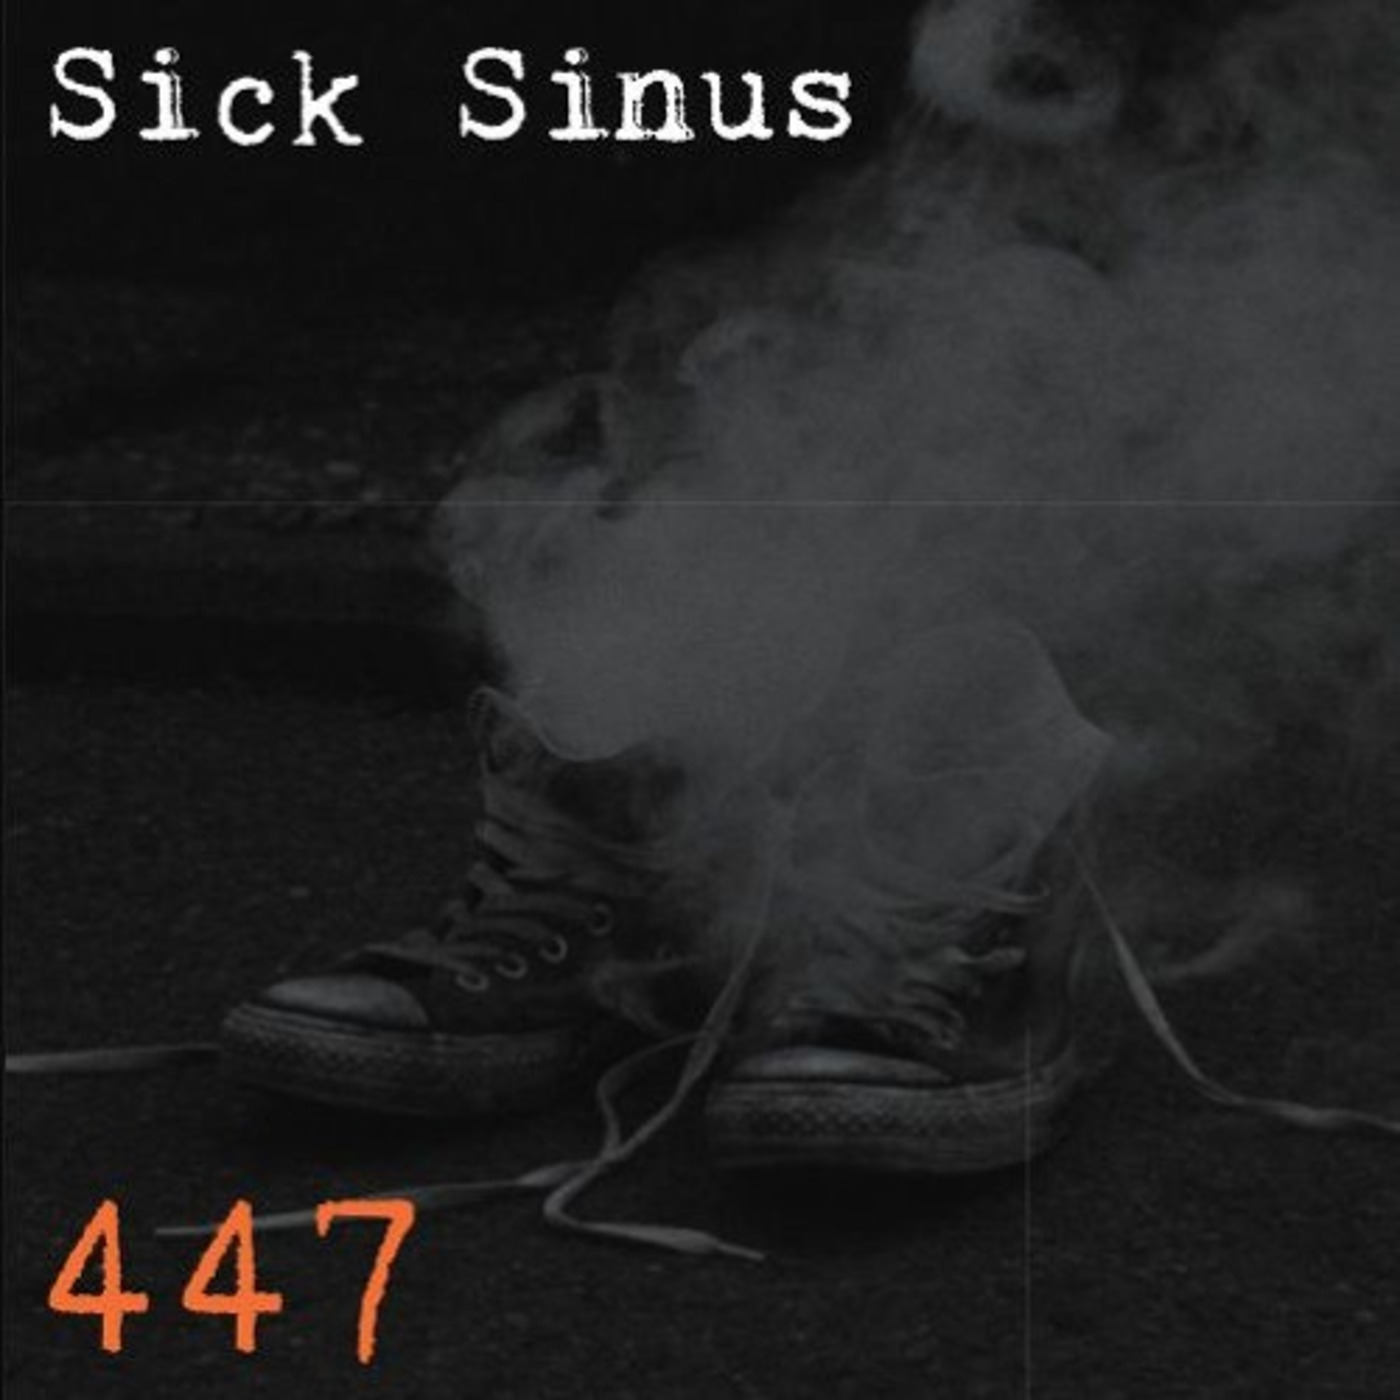 Sick Sinus - When beetears start to dry